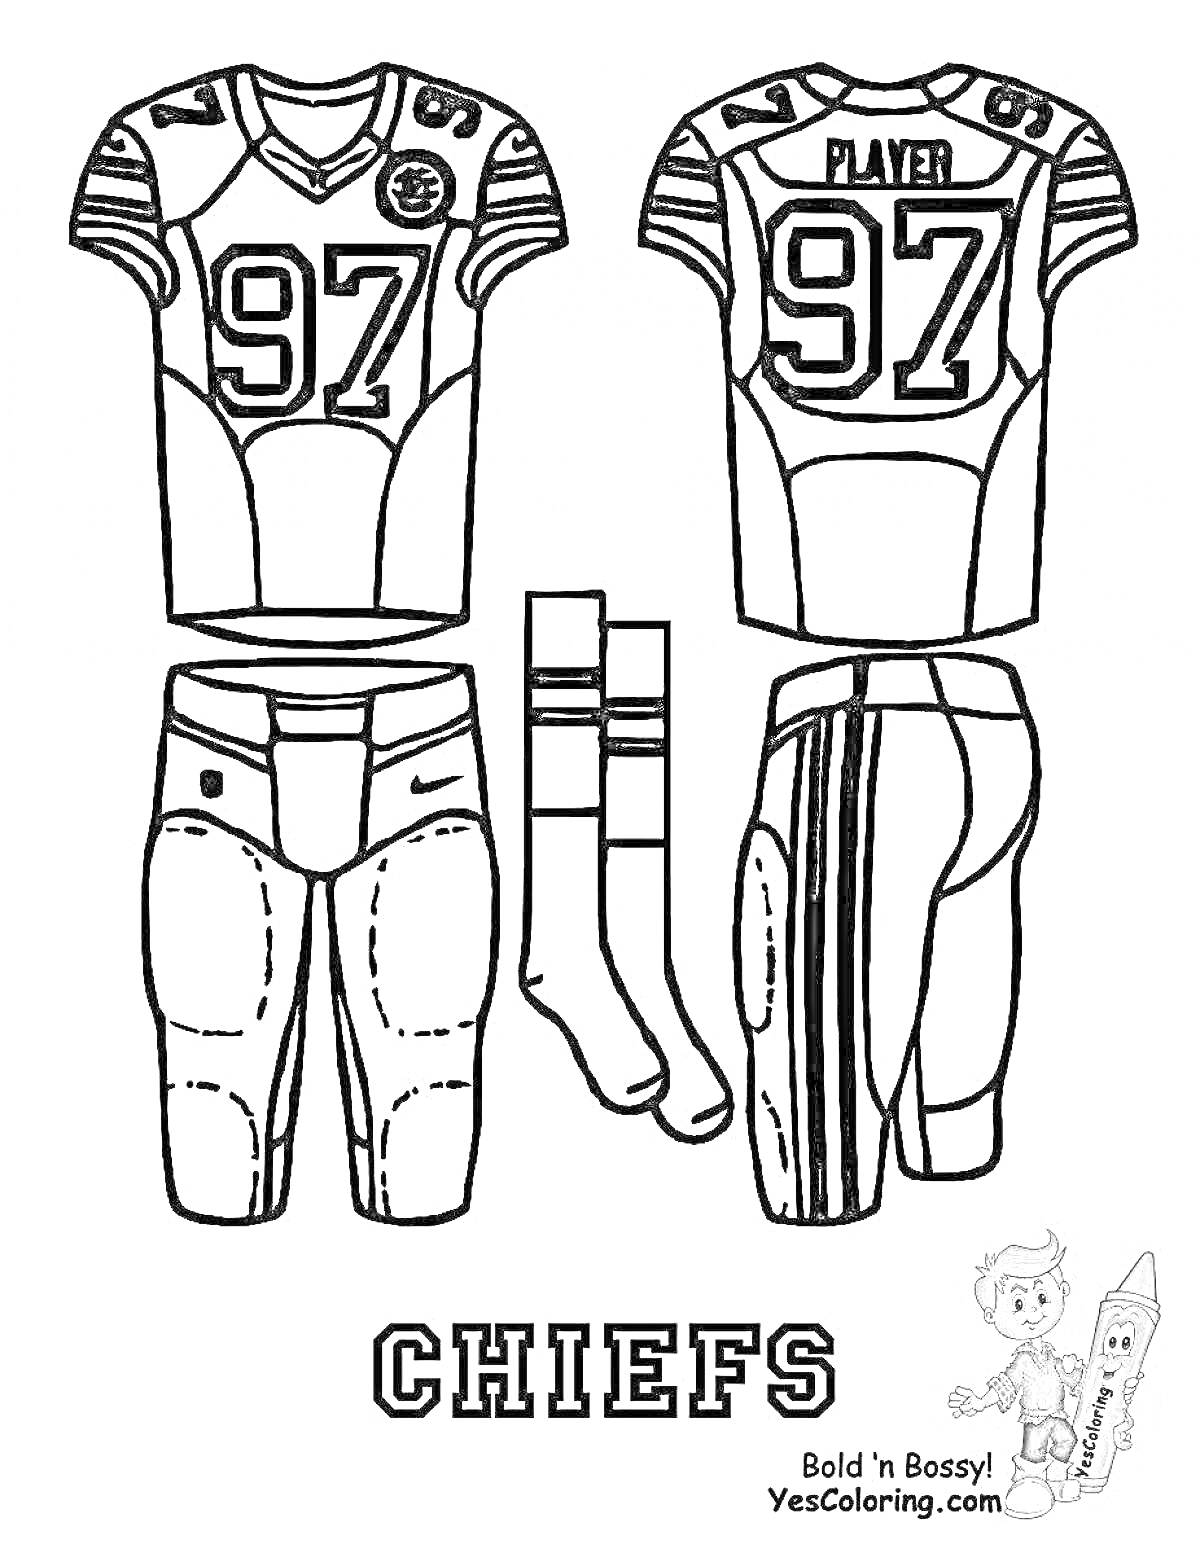 Раскраска Футбольная форма команды Chiefs с номером 97